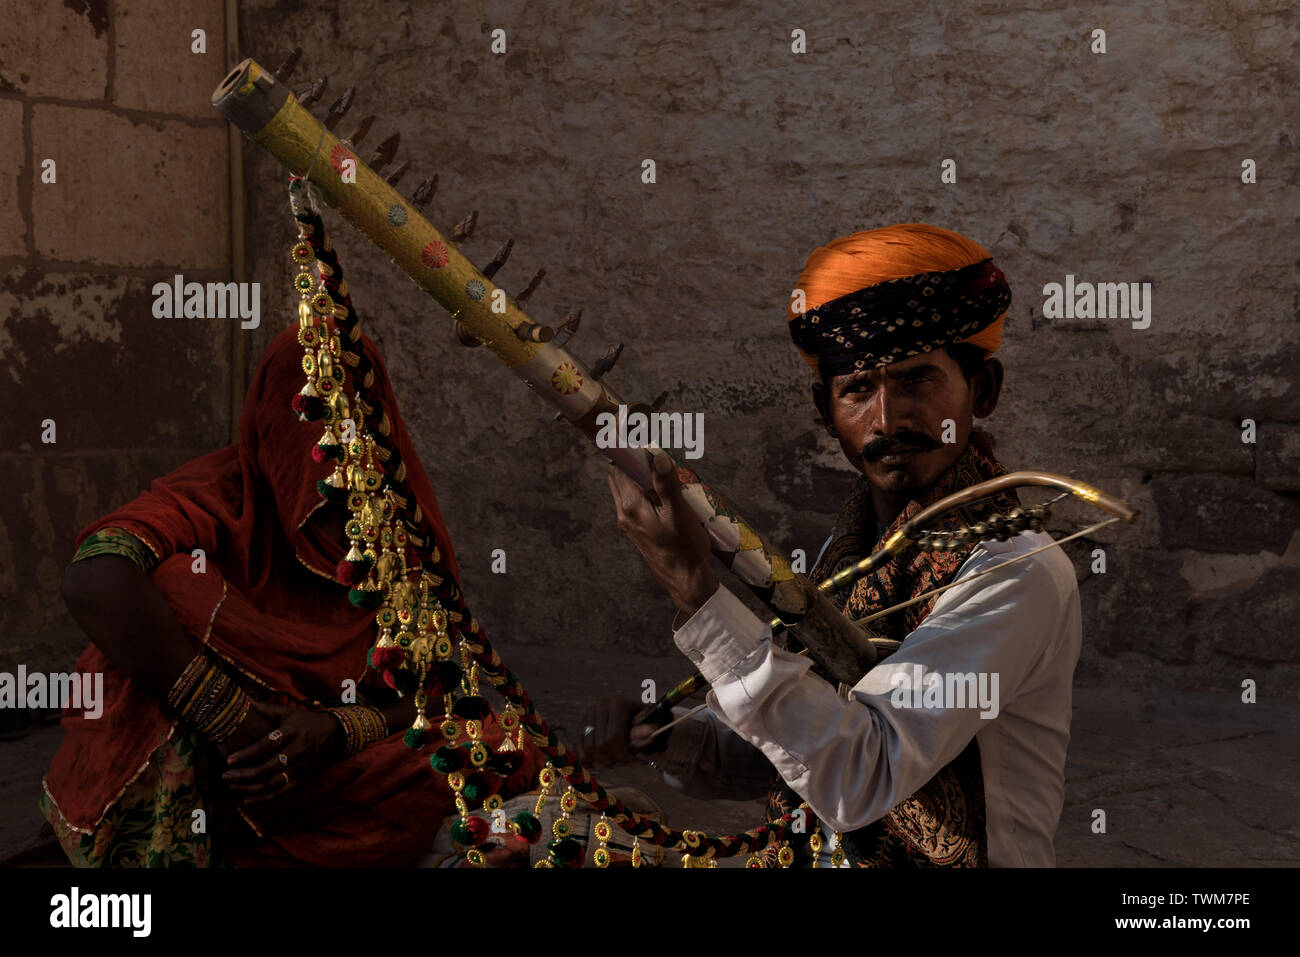 Un violoniste jouant la musique folklorique du Rajasthan à l'extérieur de Fort Mehrangarh, Jodhpur, Inde tandis que sa femme était assis sous un voile. Banque D'Images